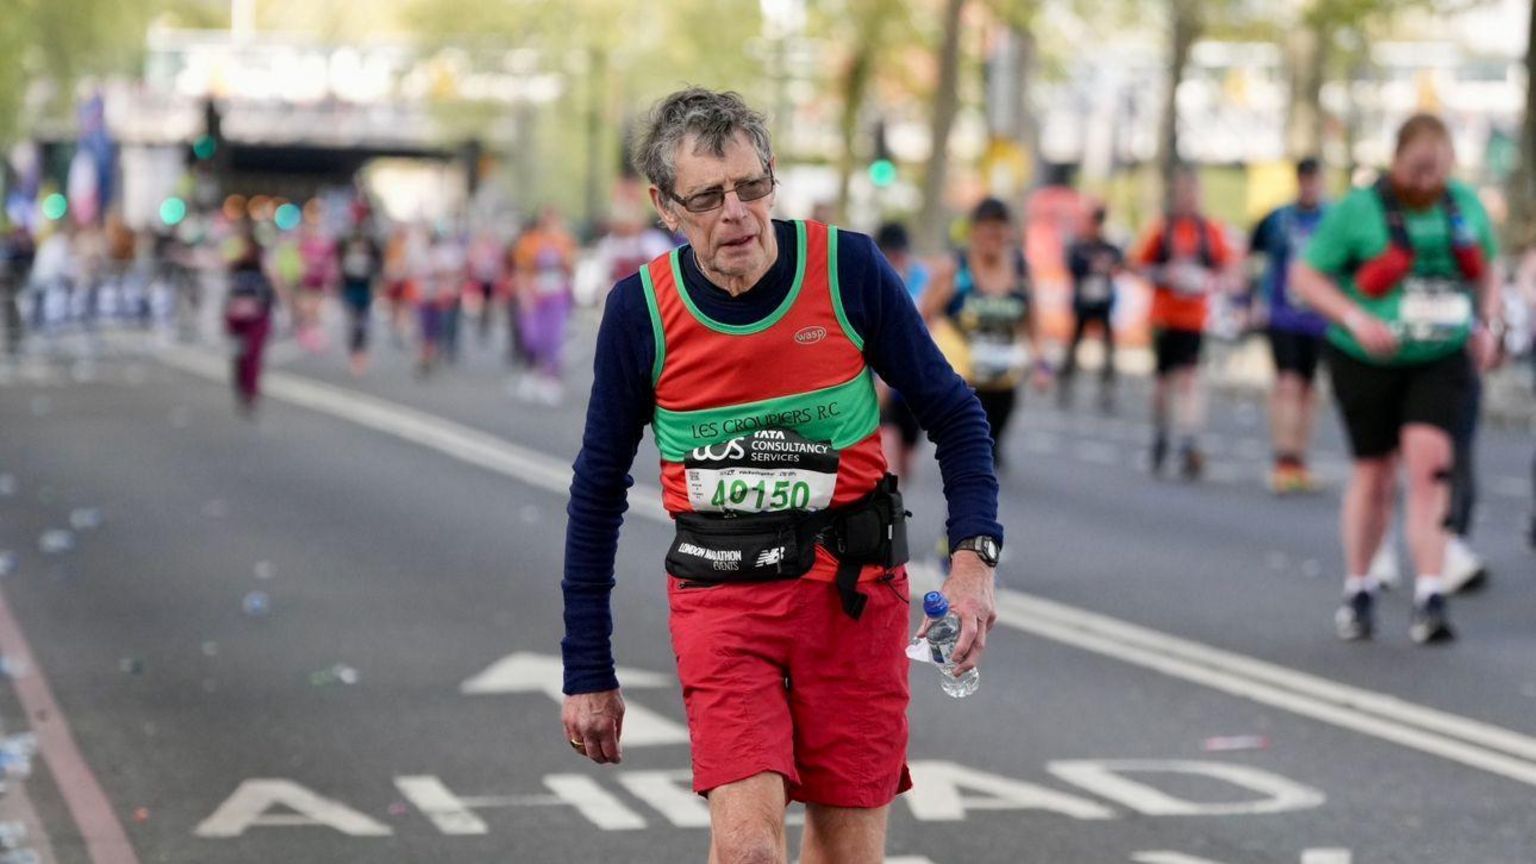 Jeff Aston running the London Marathon